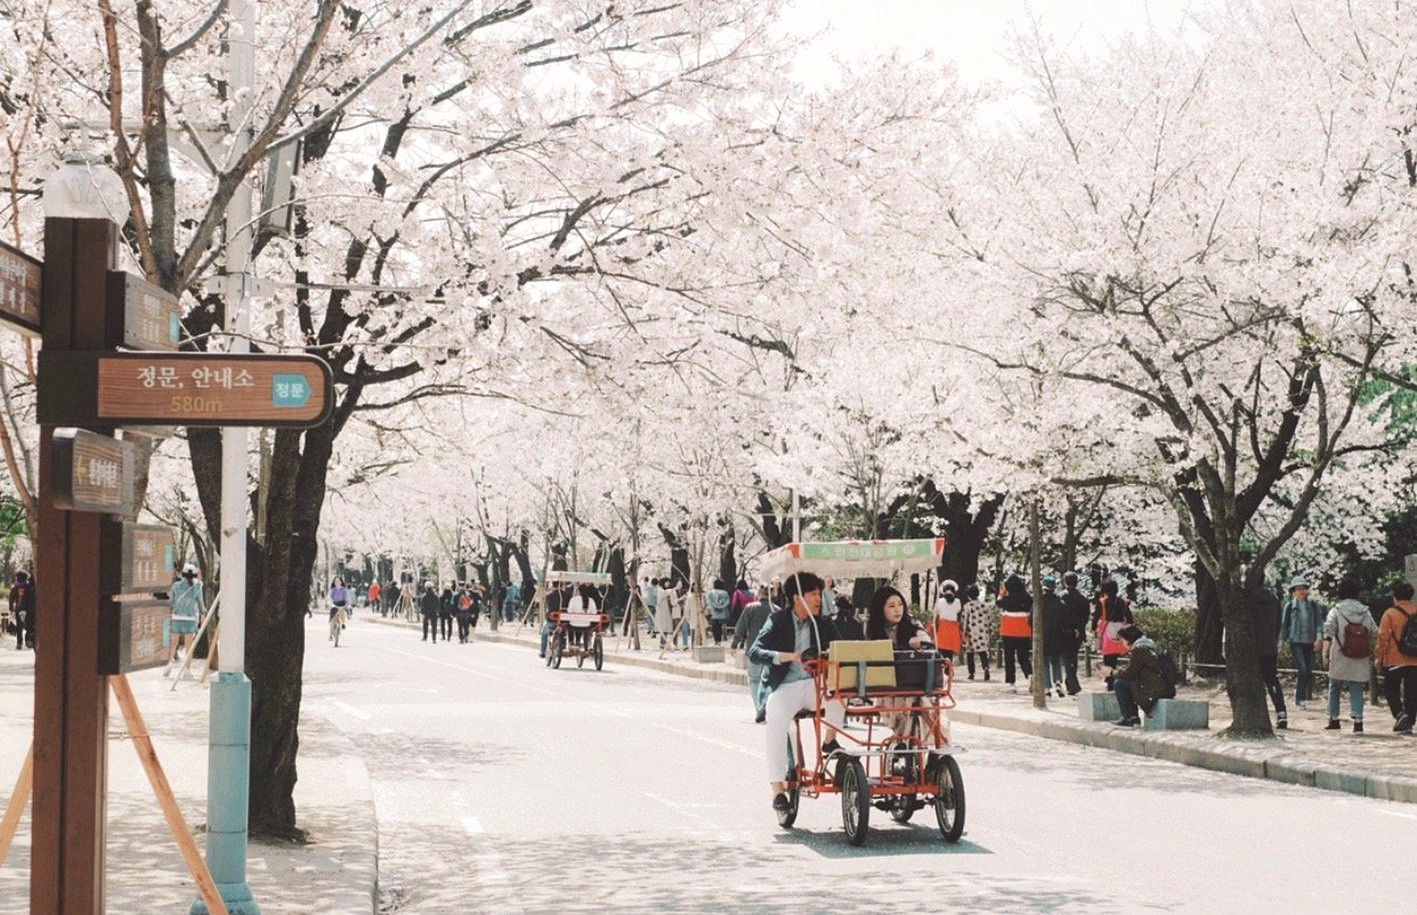 Mùa xuân ở thành phố Incheon. Ảnh: IG @pueng.picha